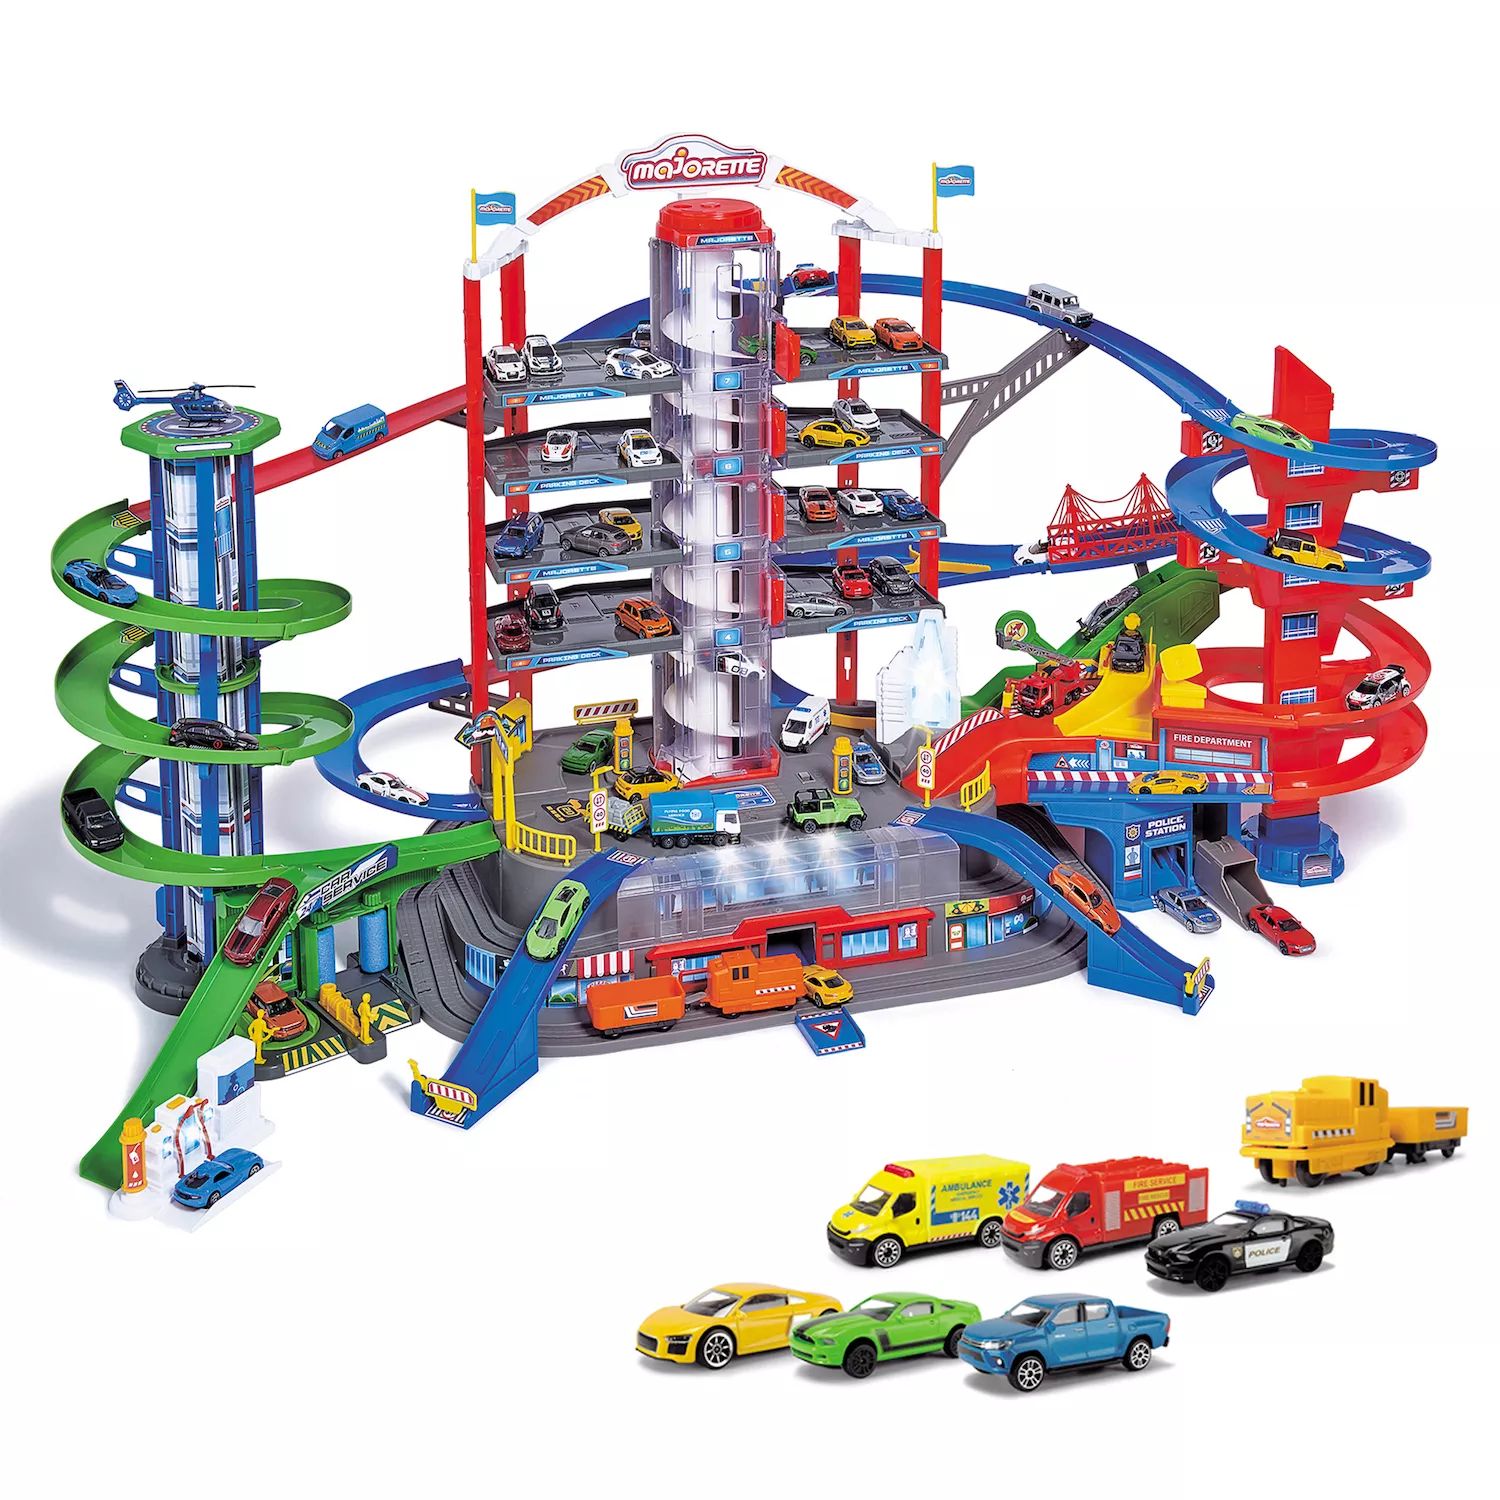 Игровой набор Dickie Toys Majorette Super City Garage с 6 литыми машинками Dickie Toys